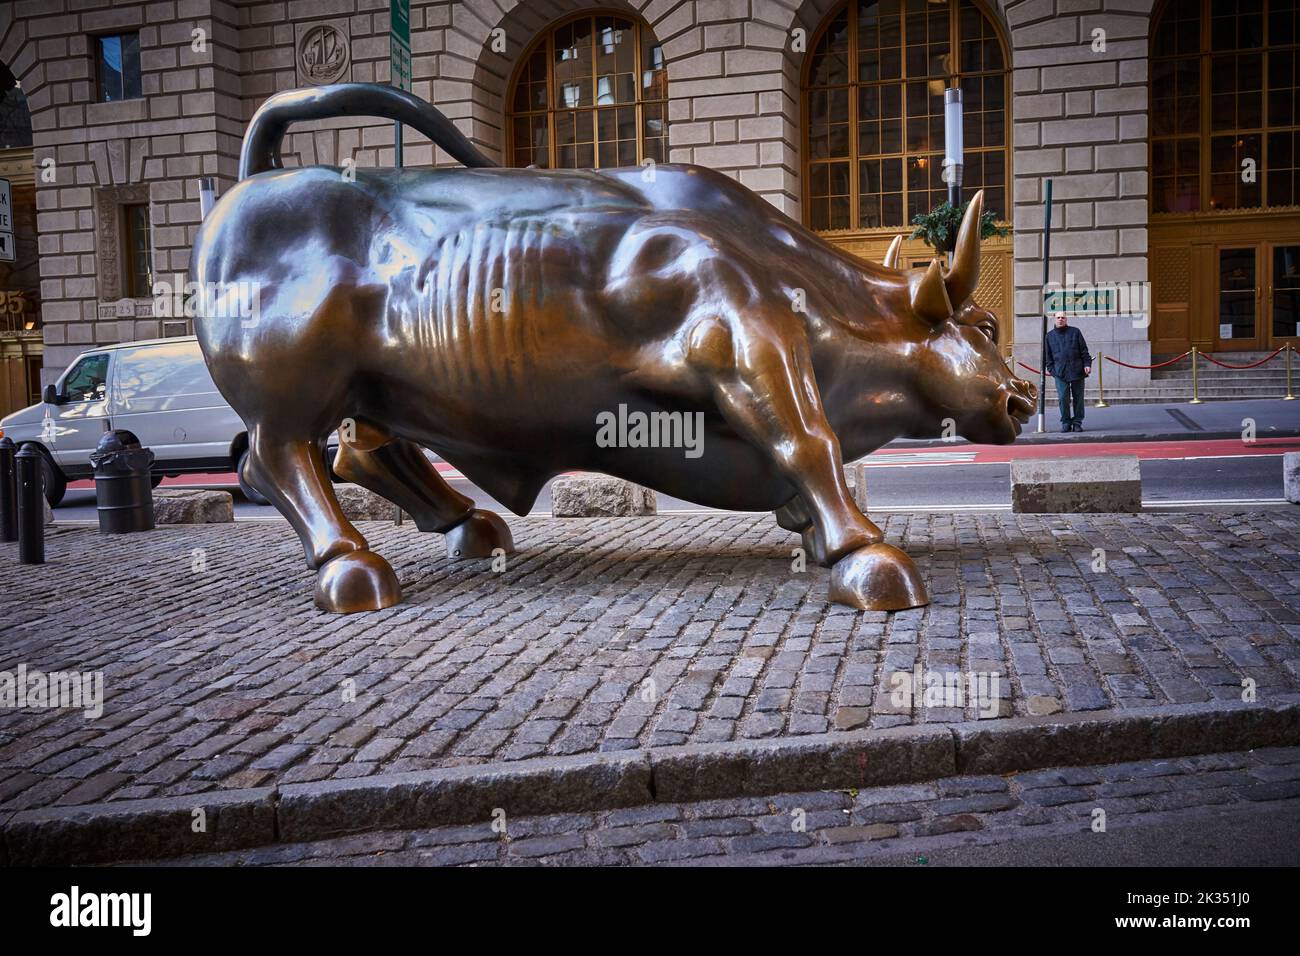 La ricarica di Bull è una popolare destinazione turistica che attira migliaia di persone, simboleggiando Wall Street e il quartiere finanziario. Foto Stock